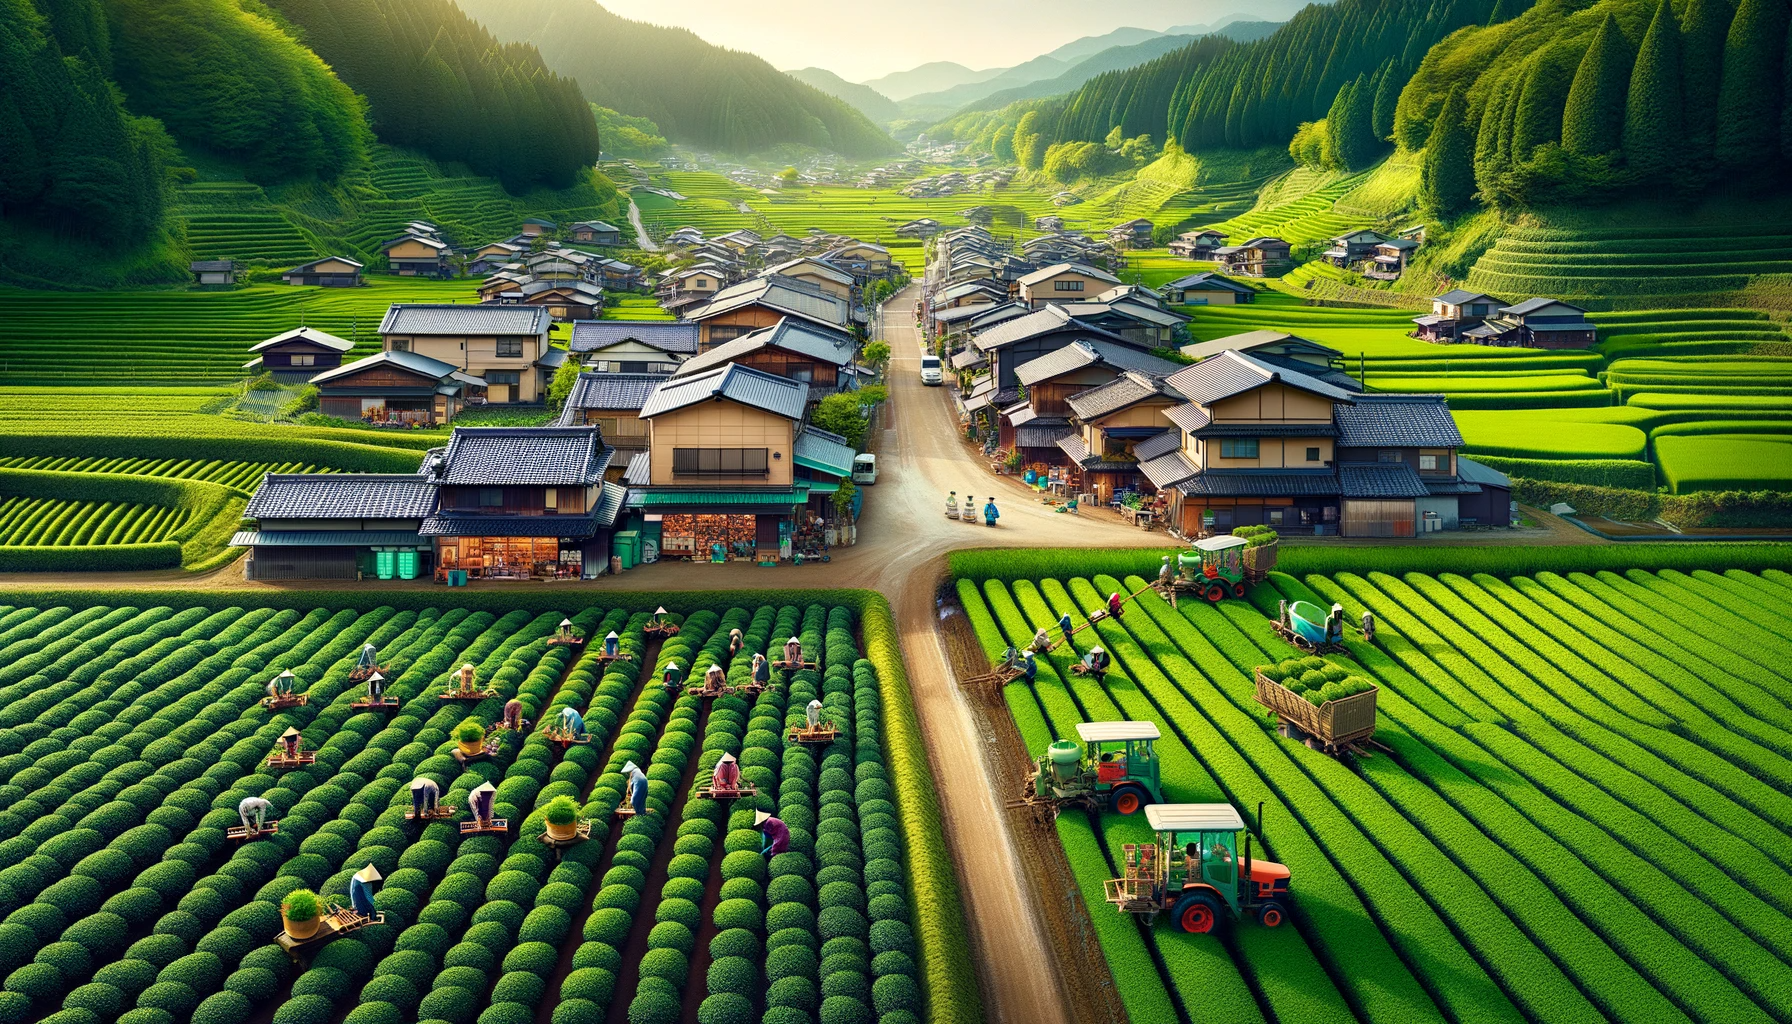 Village japonais avec champs de thé. À gauche, des agriculteurs utilisant des méthodes traditionnelles de culture biologique ; le droit dispose de machines pour les méthodes conventionnelles